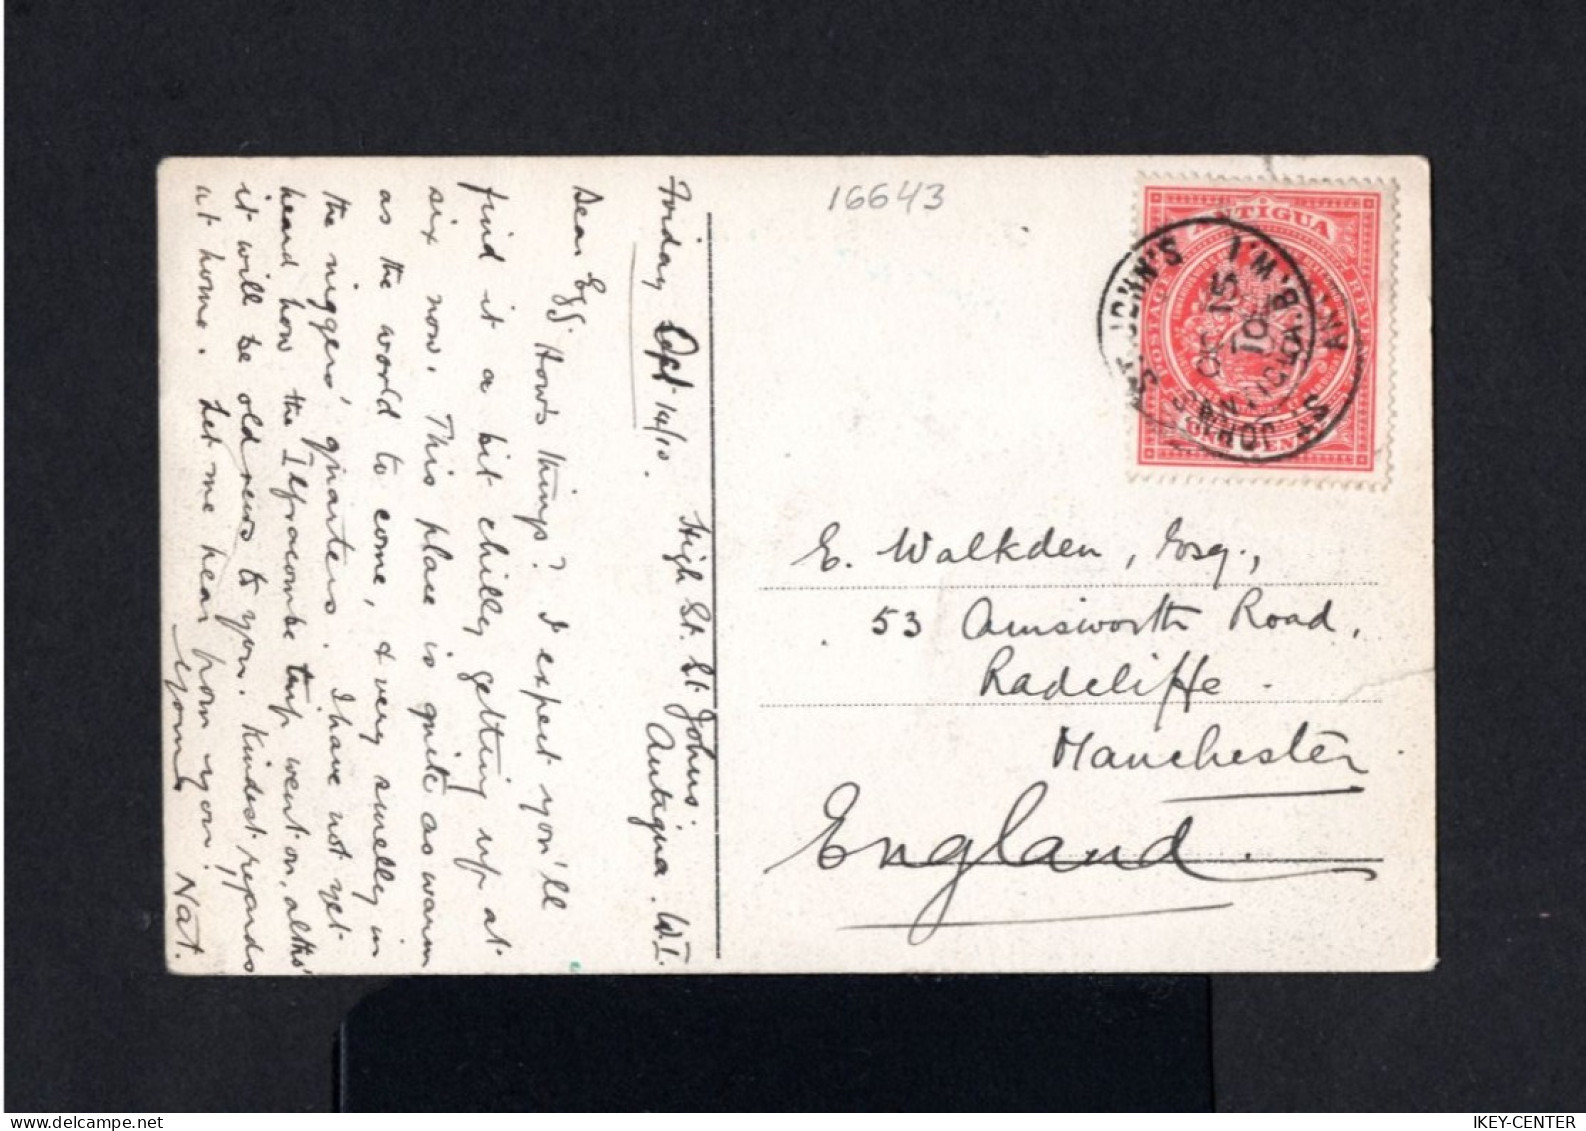 16643-ANTIGUA-.OLD POSTCARD ST.JOHN'S To MANCHESTER (england) 1910.Carte Postale.POSTKARTE.British ANTIGUA. - 1858-1960 Colonia Britannica